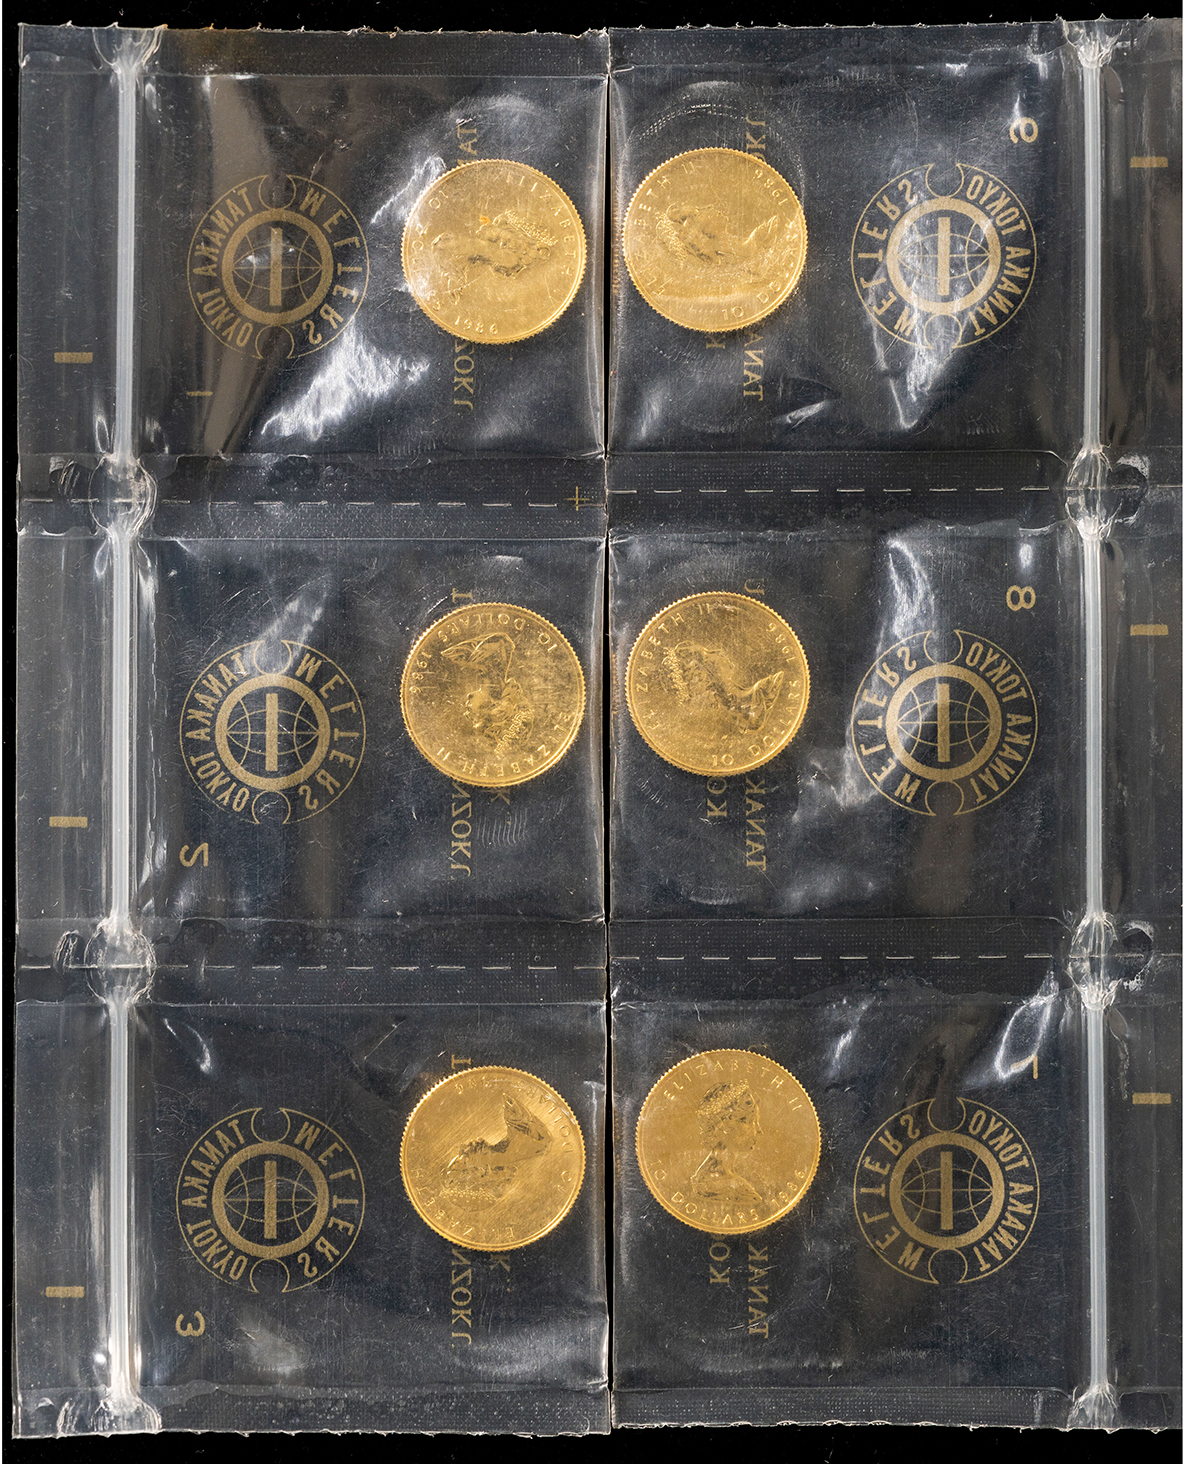 1986年 カナダ メイプルリーフ金貨 10ドル - 貨幣